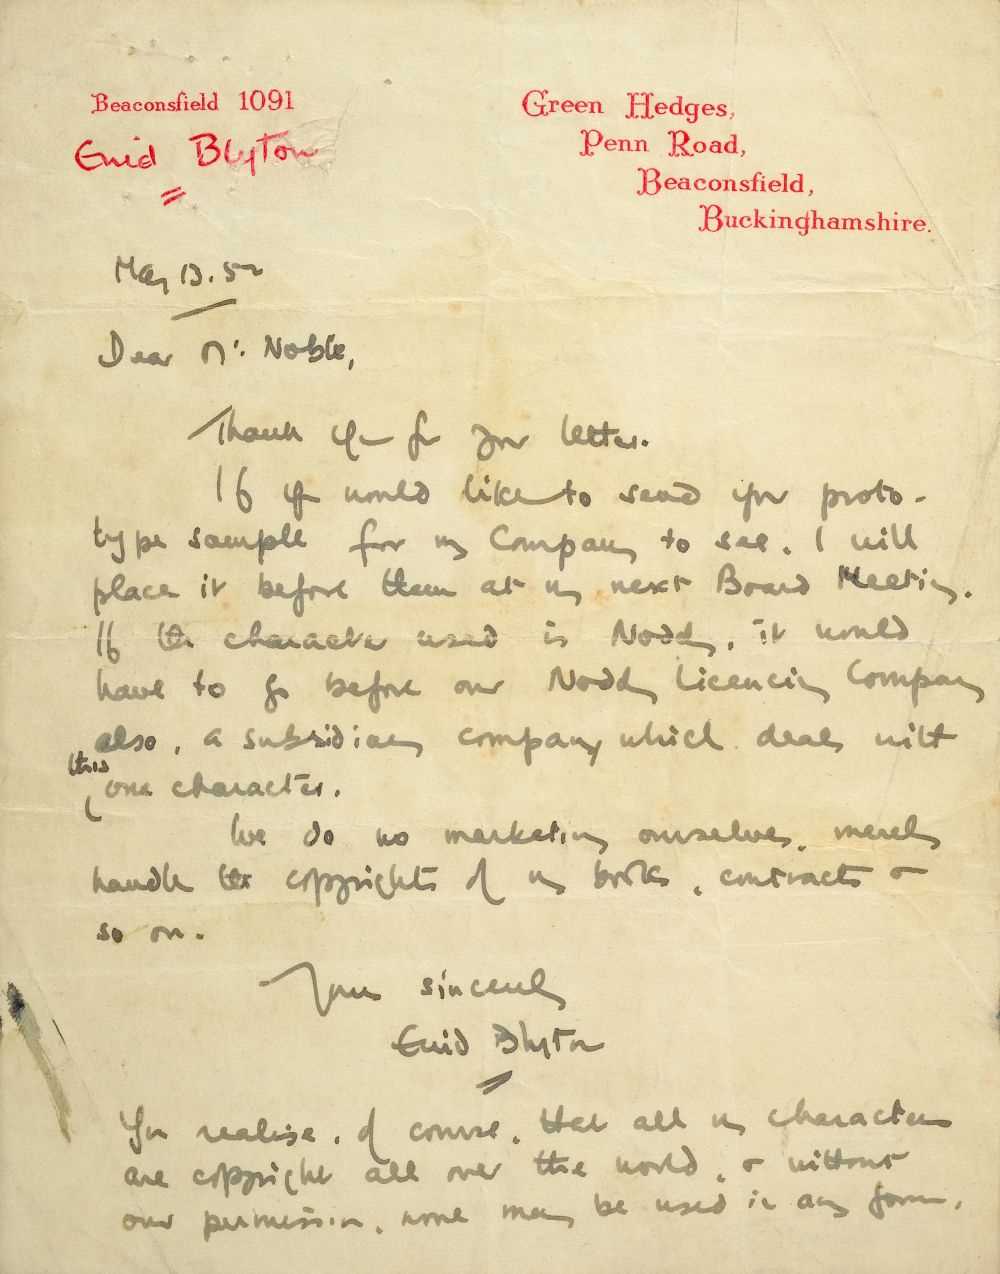 Lot 542 - Blyton (Enid, 1897-1968). Autograph Letter, Signed, 1952